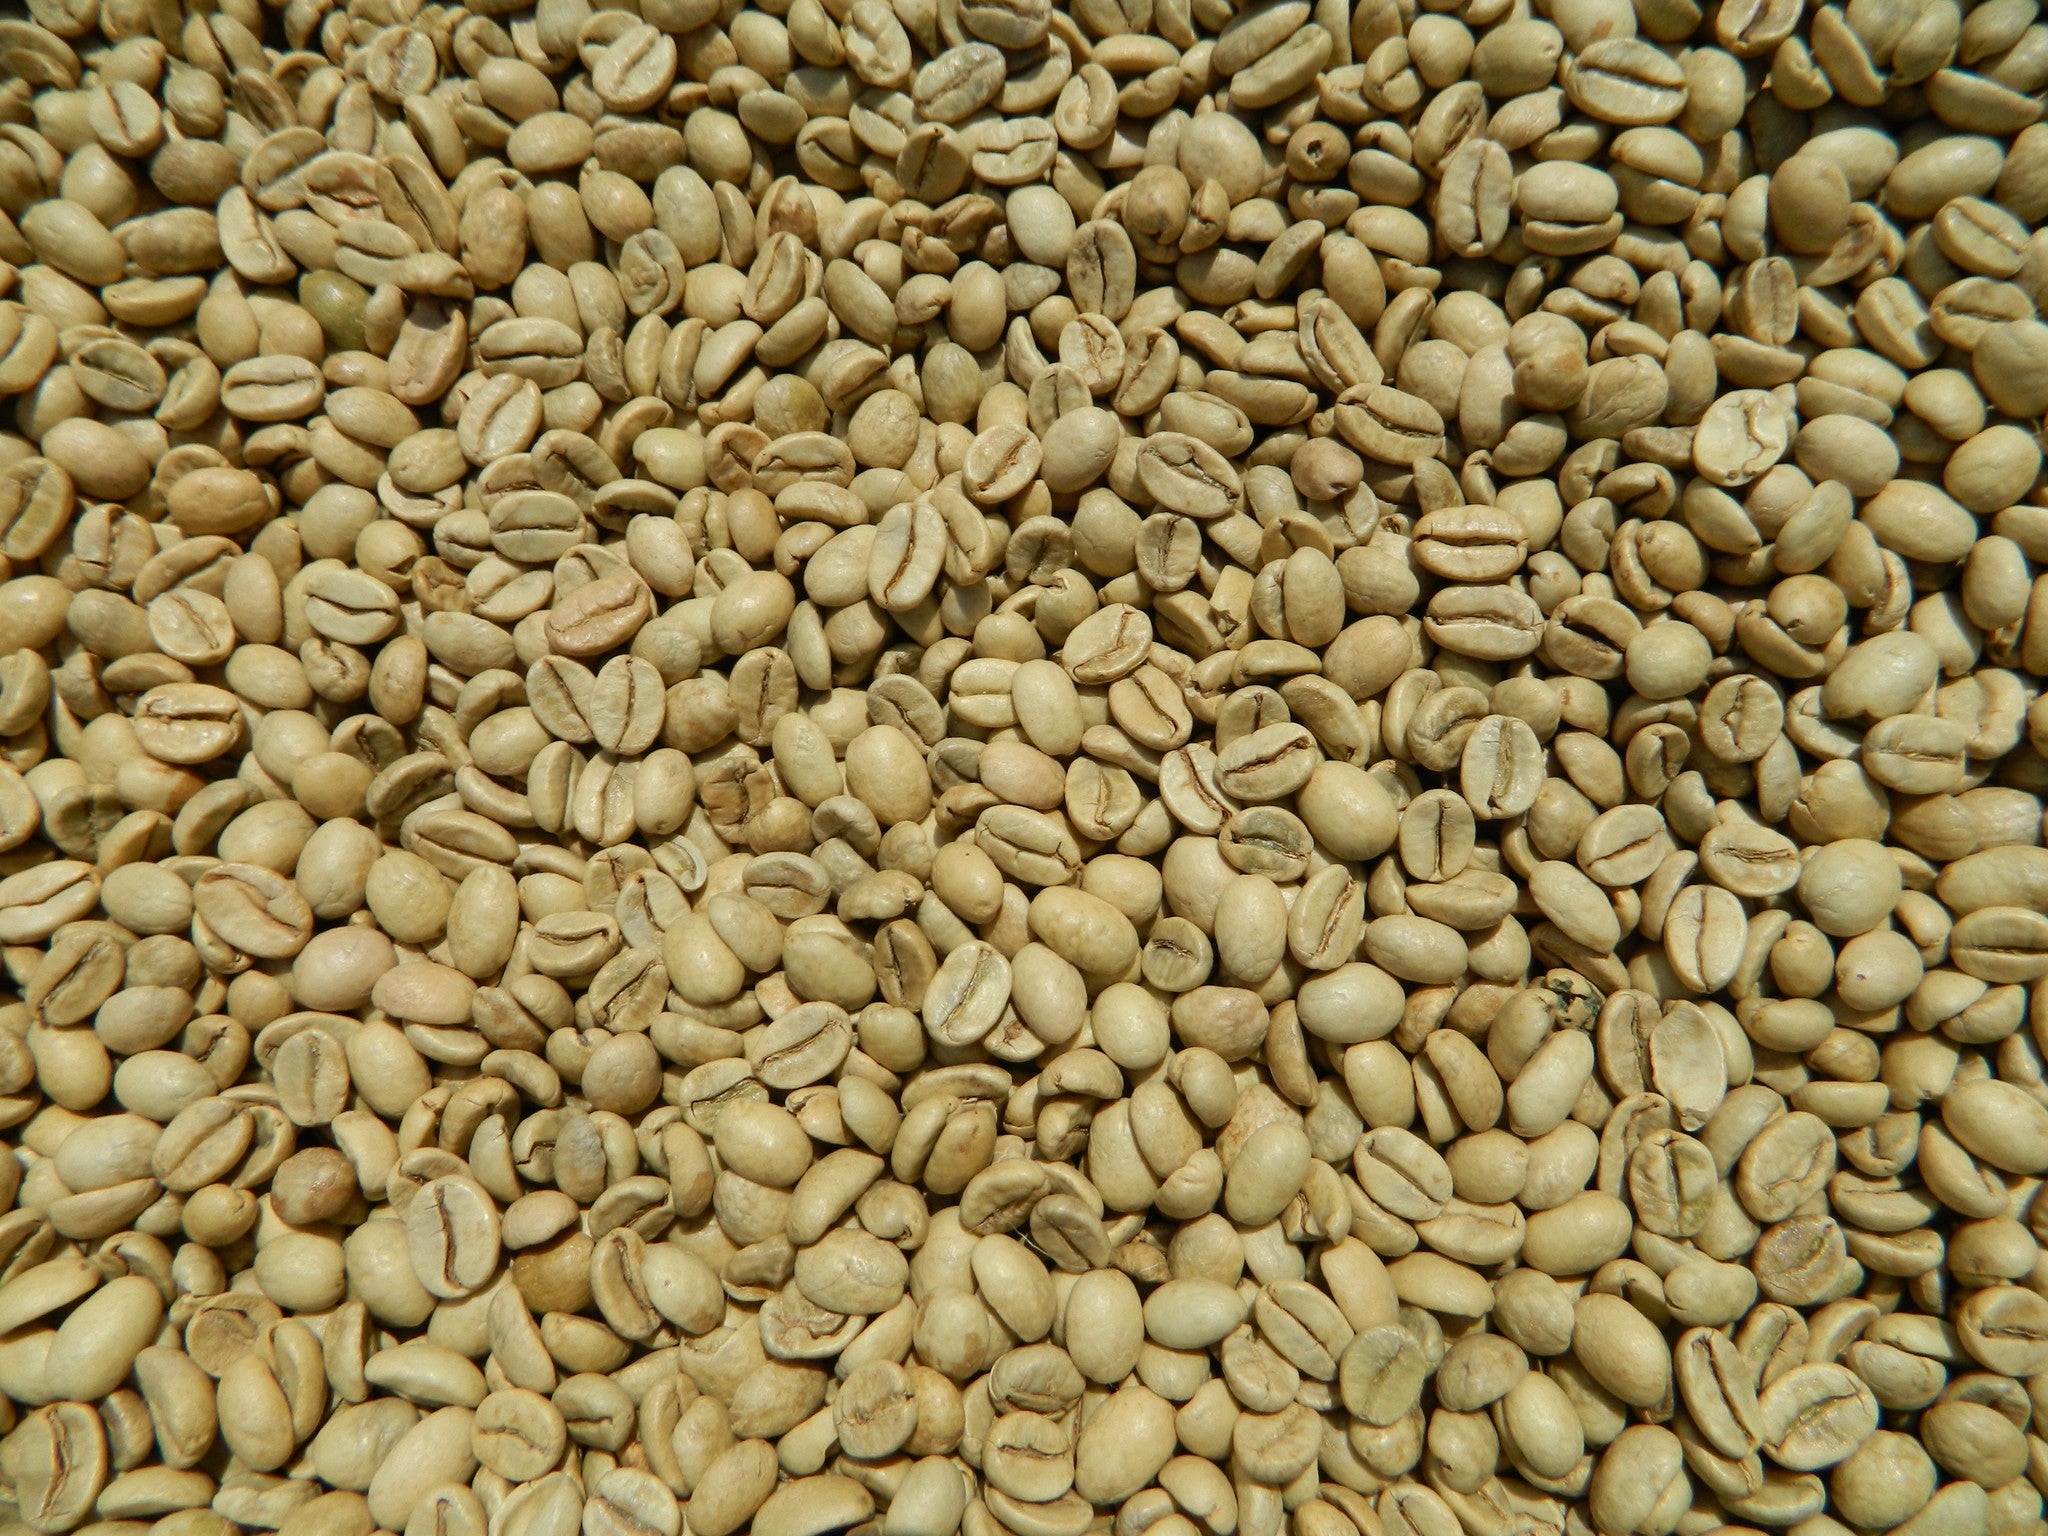 https://homeroastcoffee.com/cdn/shop/products/India_Monsoon_Malabar_AA_raw_coffee_beans_K.JPG?v=1469649783